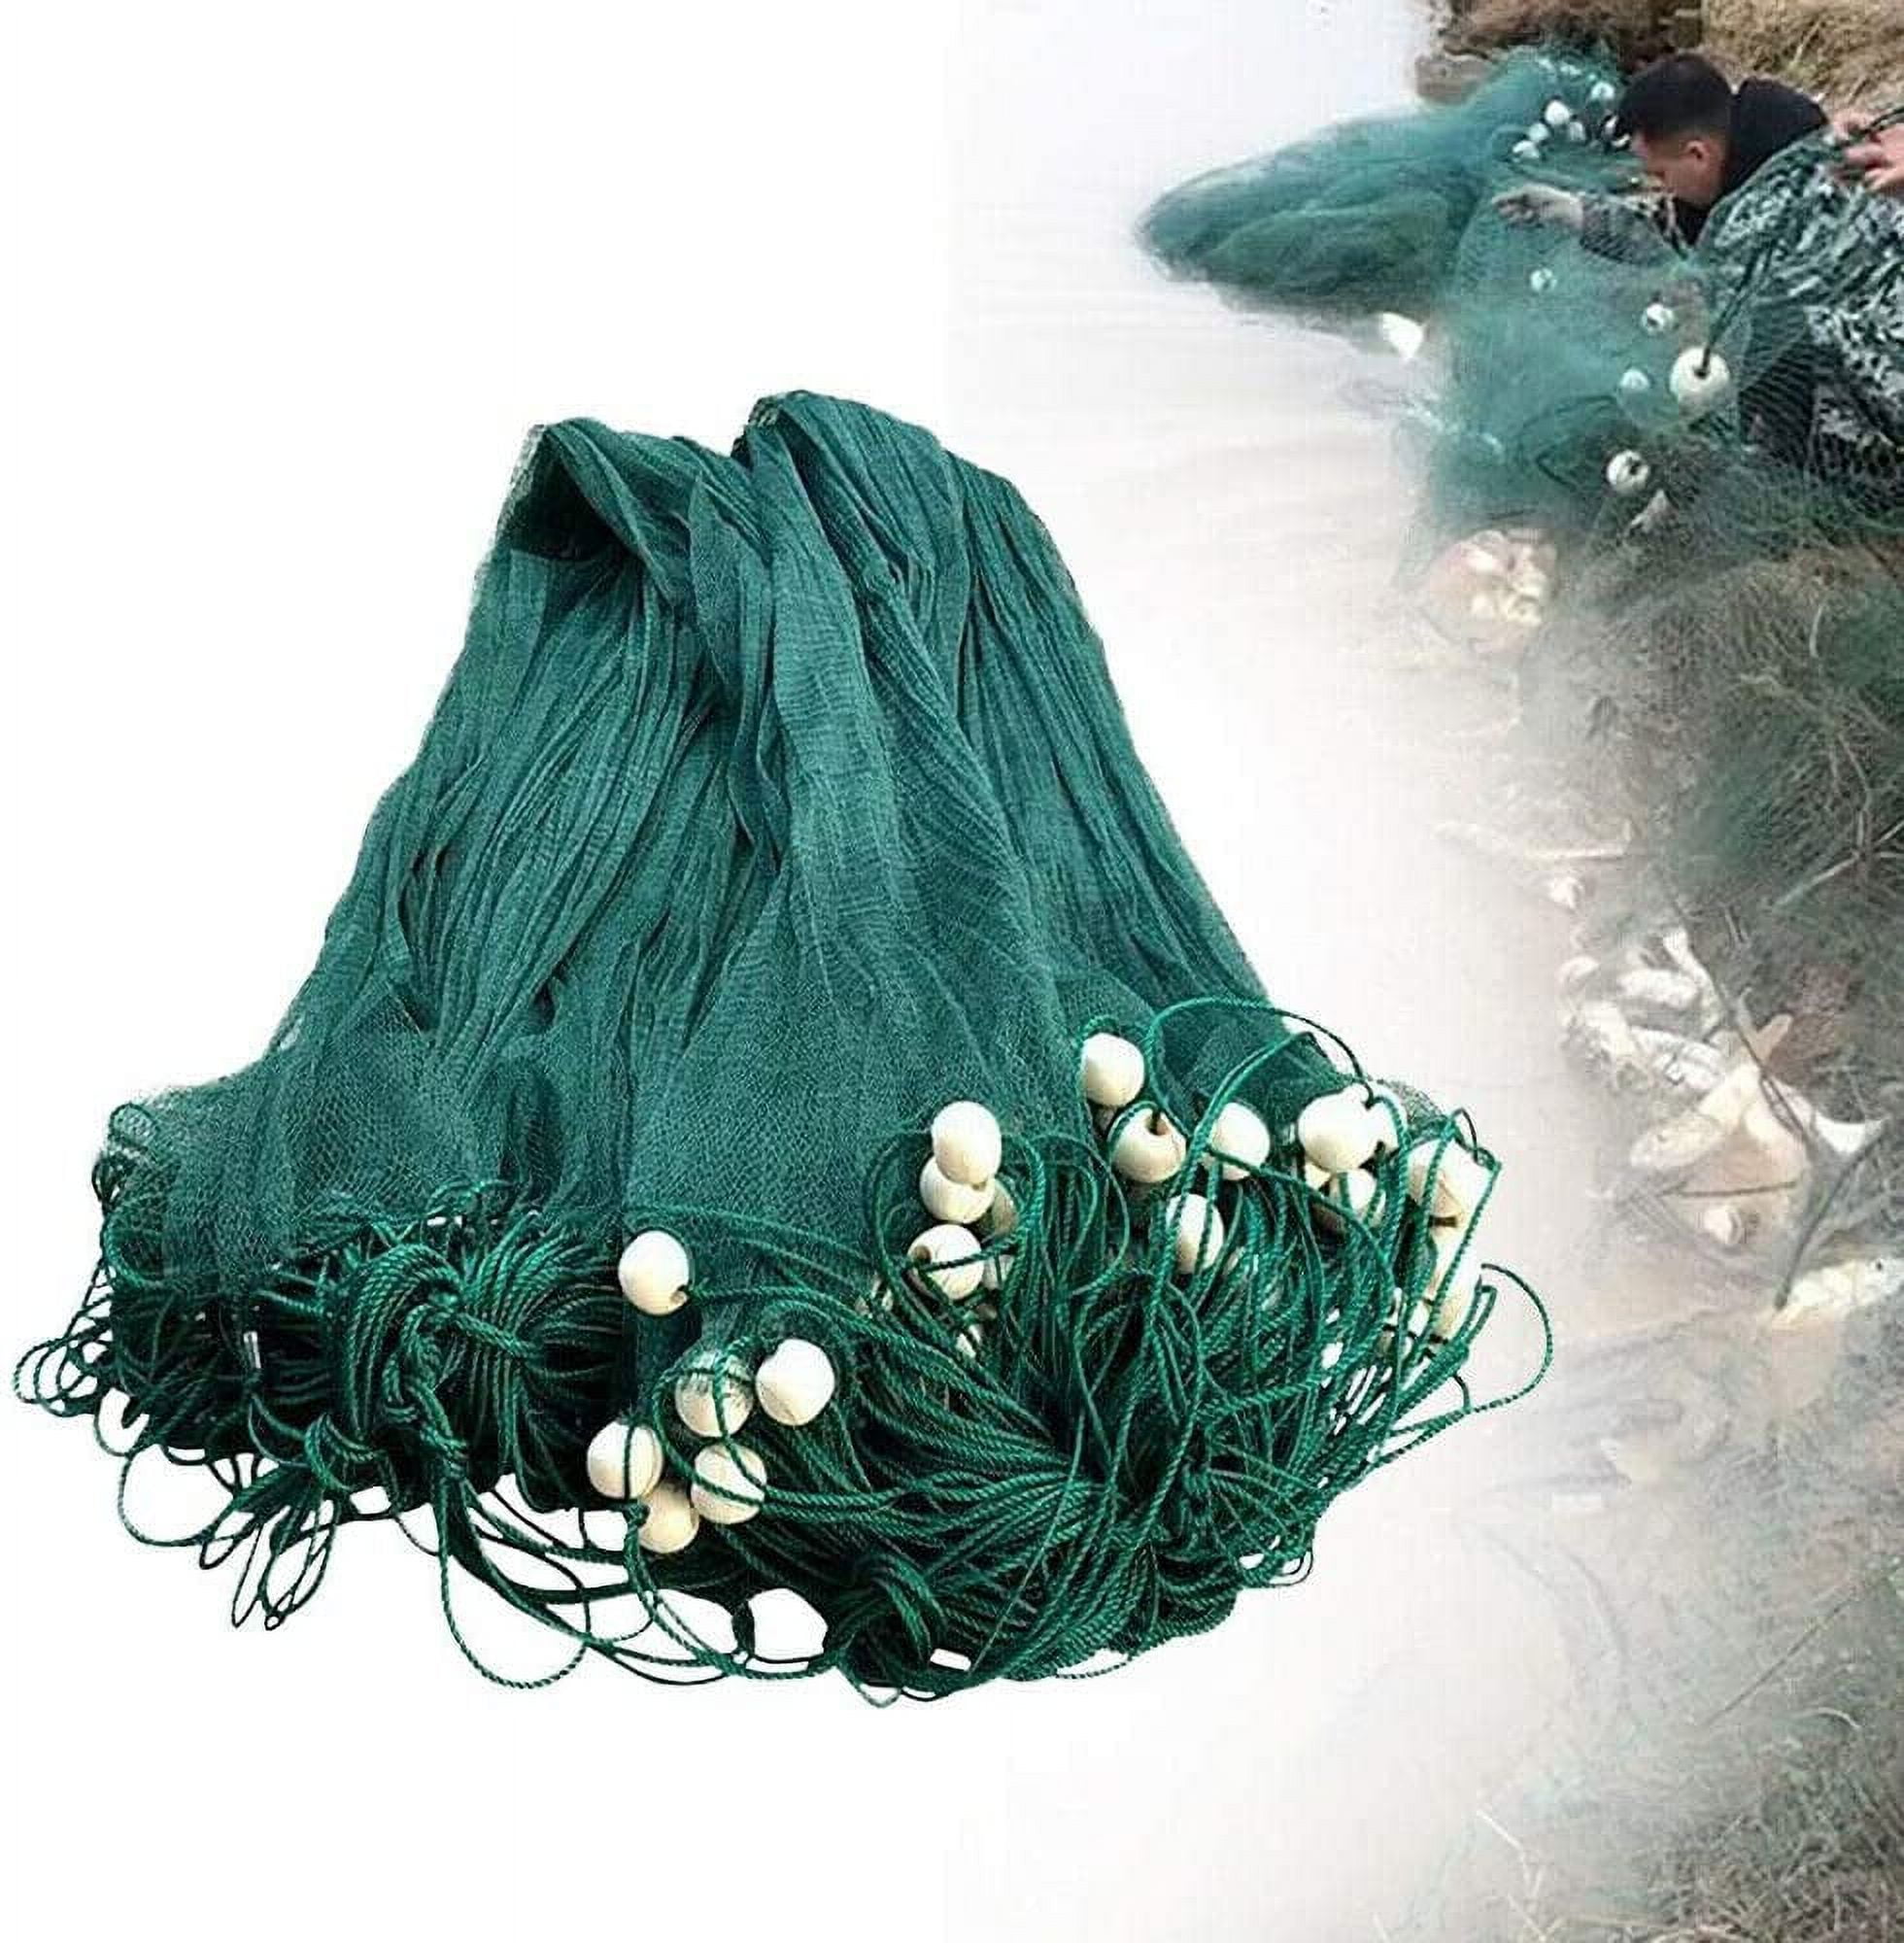 ANQIDI 33' Green Fishing Net Hand Made Nylon Beach Seine Drag Net